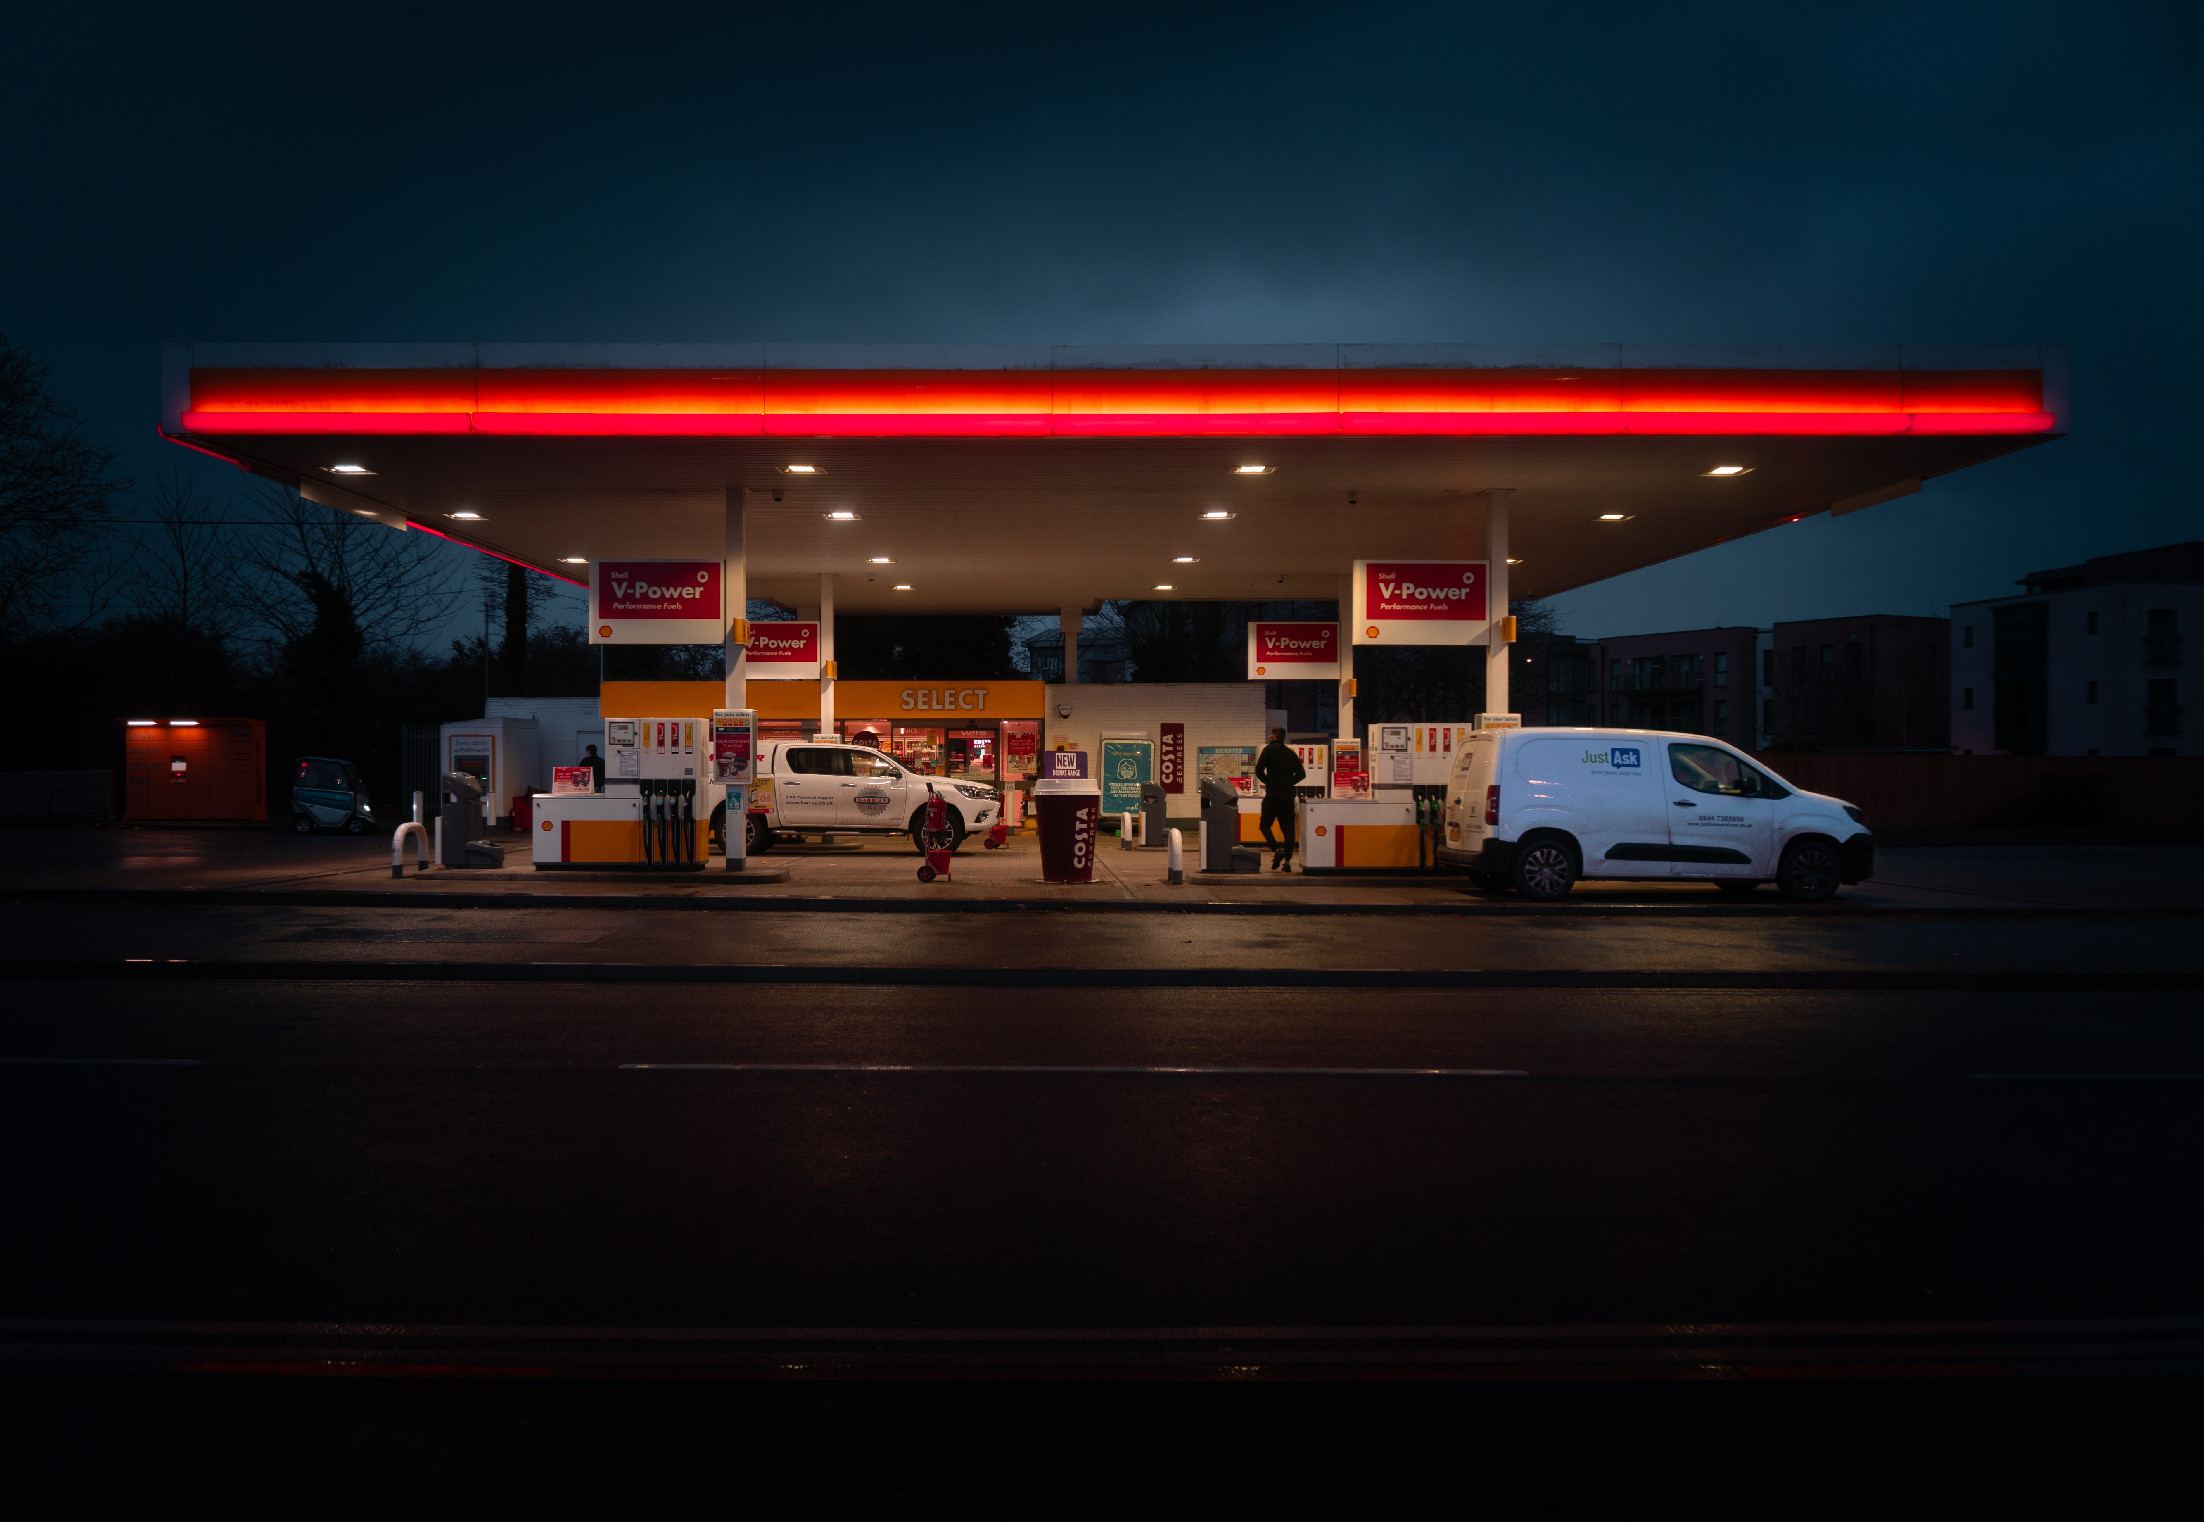 Tönkremehetnek a kiskereskedők ha marad a benzinár-stop